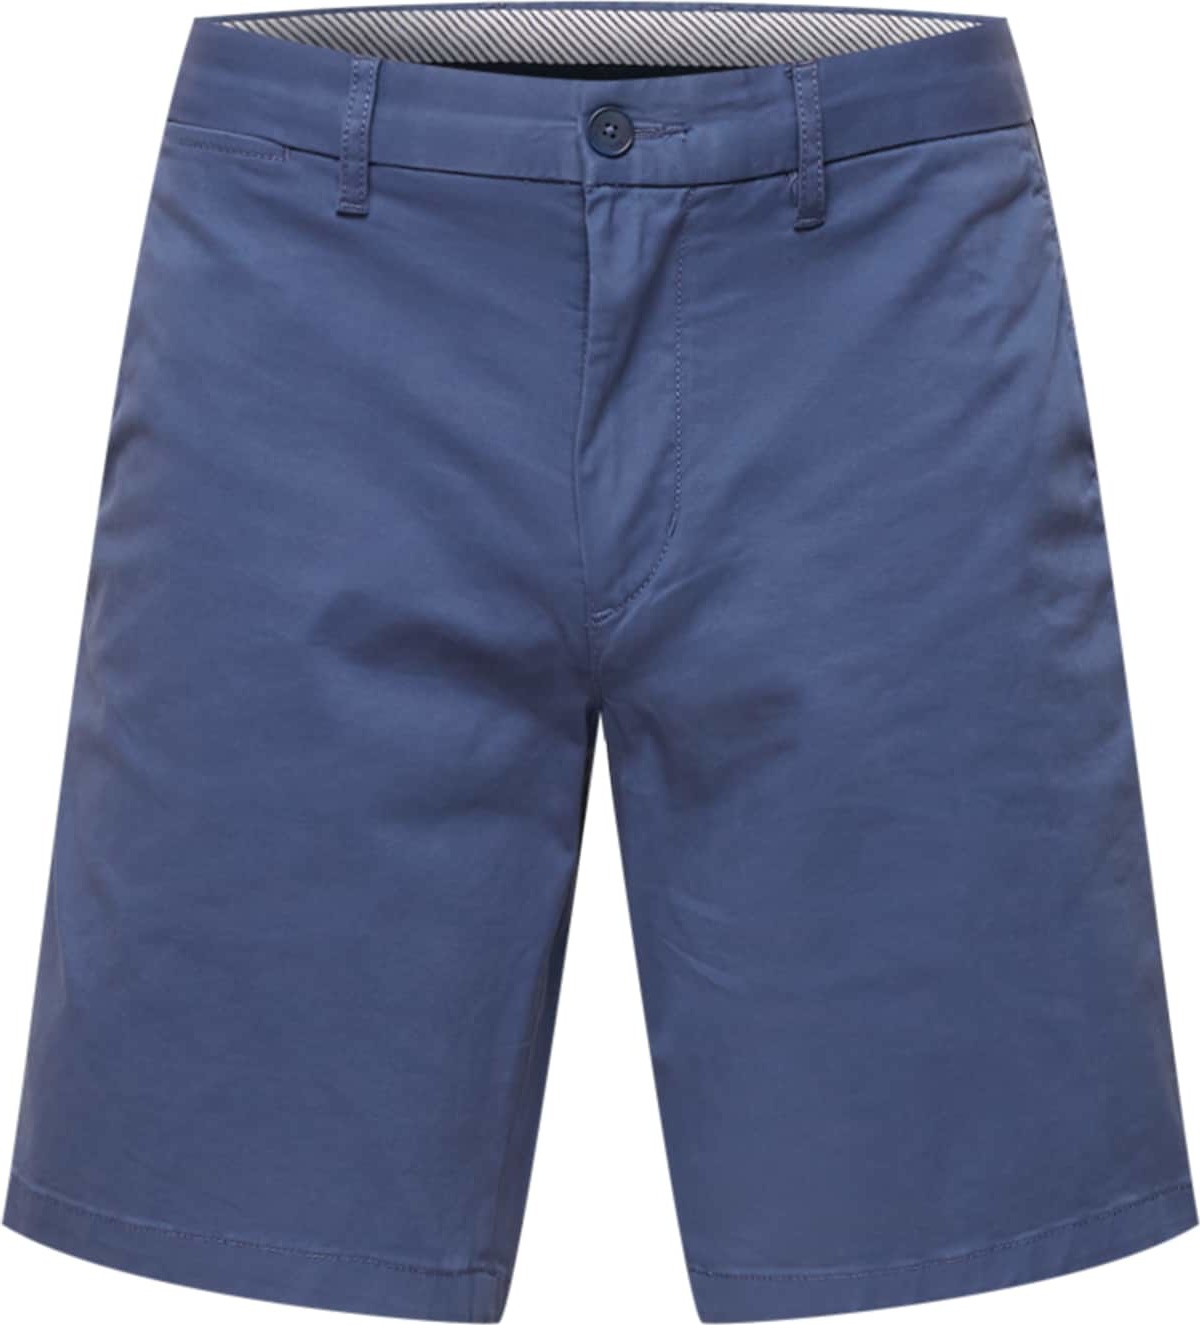 TOMMY HILFIGER Chino kalhoty 'Brooklyn' enciánová modrá